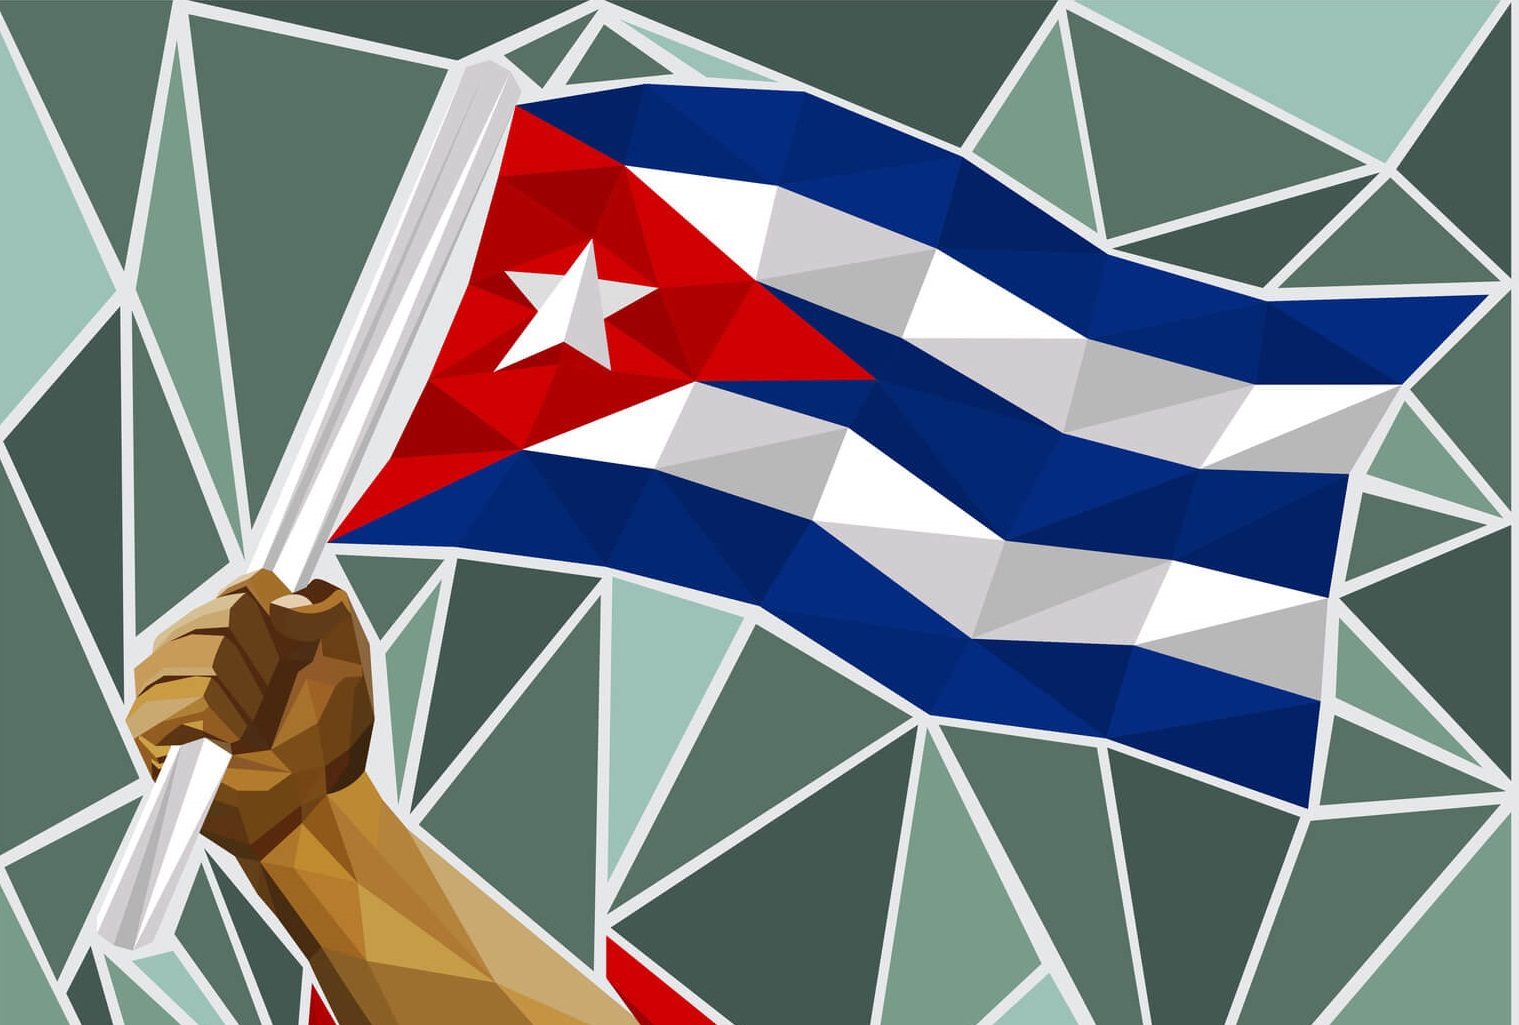 Celebran en el mundo Aniversario 65 de la Revolución Cubana